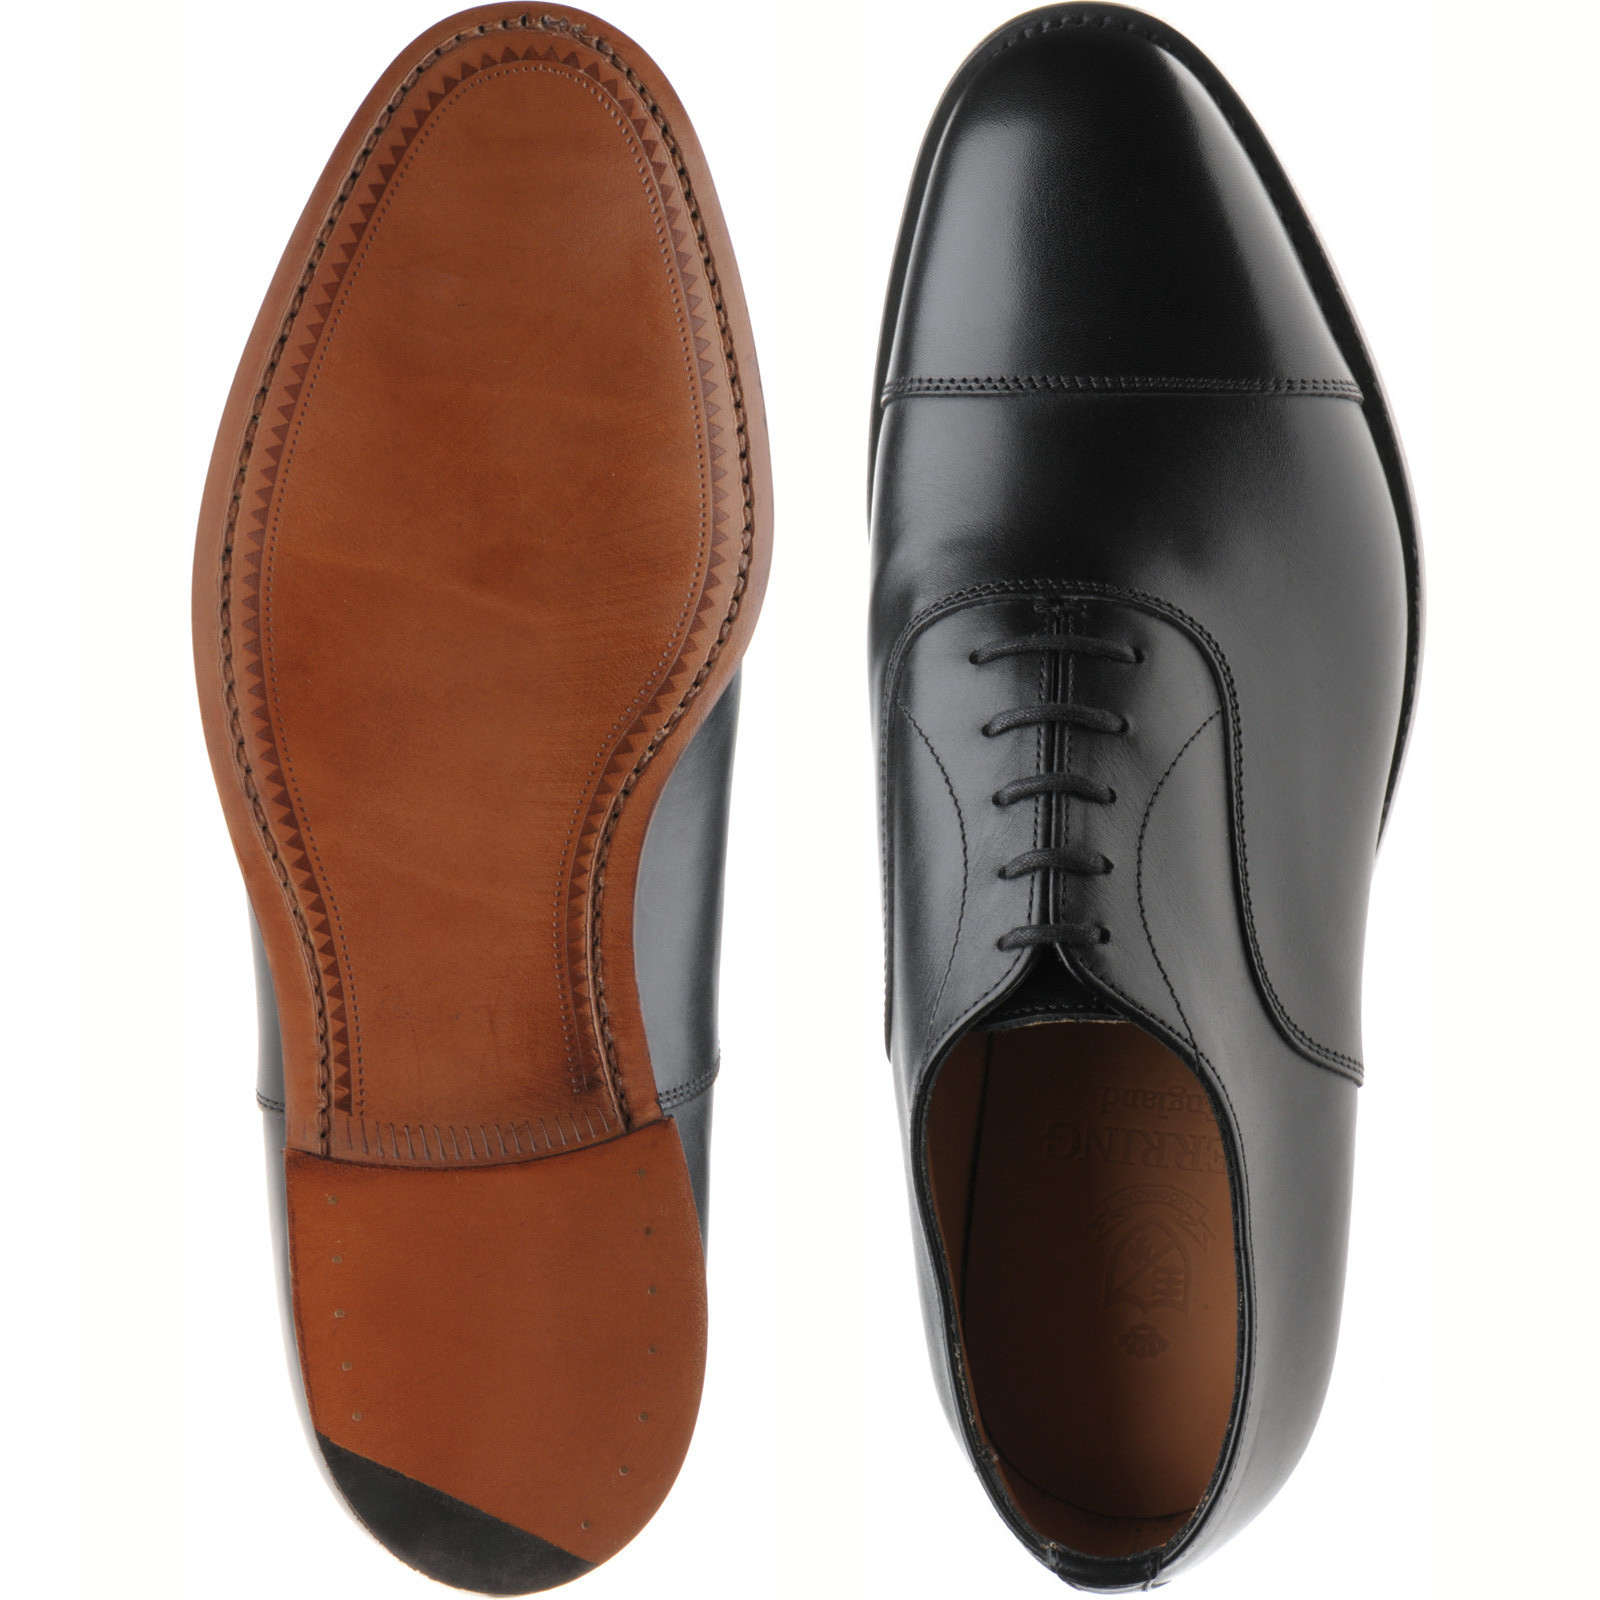 Herring shoes | Herring Premier | Headingley in Black Calf at Herring Shoes